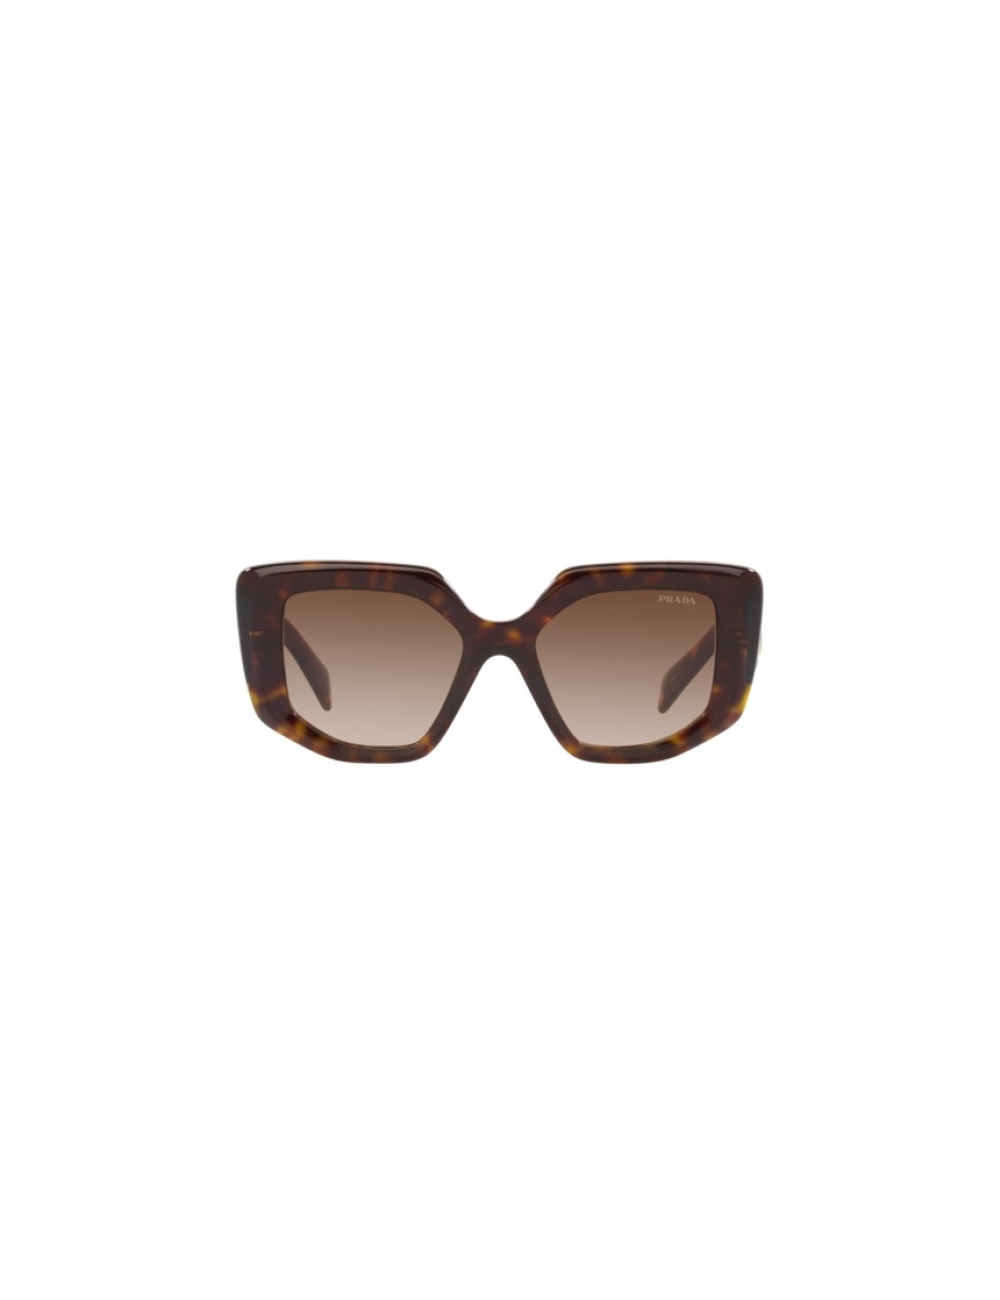 Prada PR 26ZS 55 Dark Brown & Sage/Honey Tortoise Sunglasses | Sunglass Hut  USA